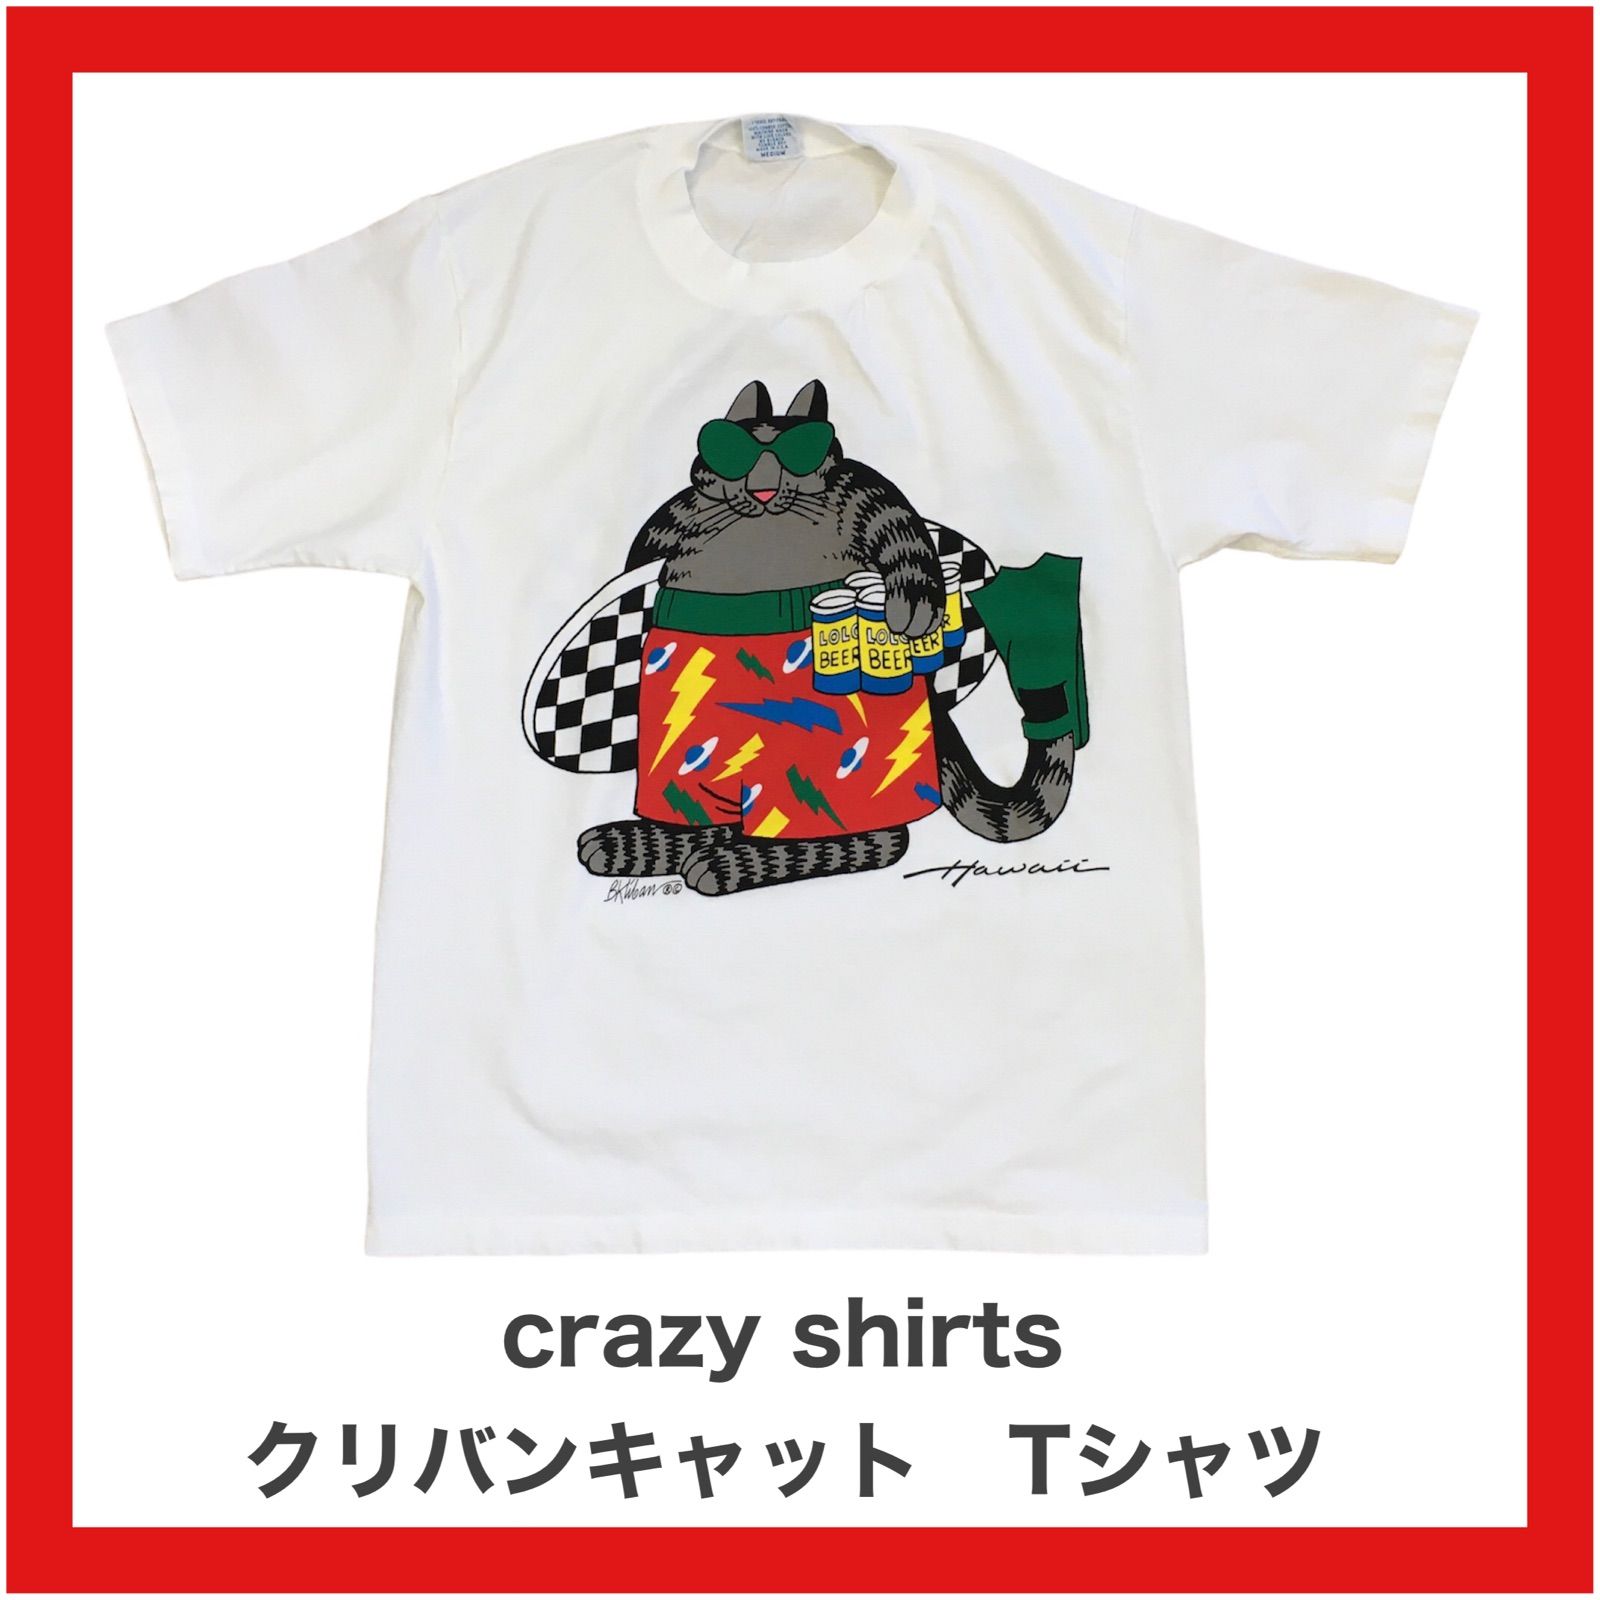 超特価得価 made in USA ハワイ クリバンキャット crazy shirtsの通販 ...